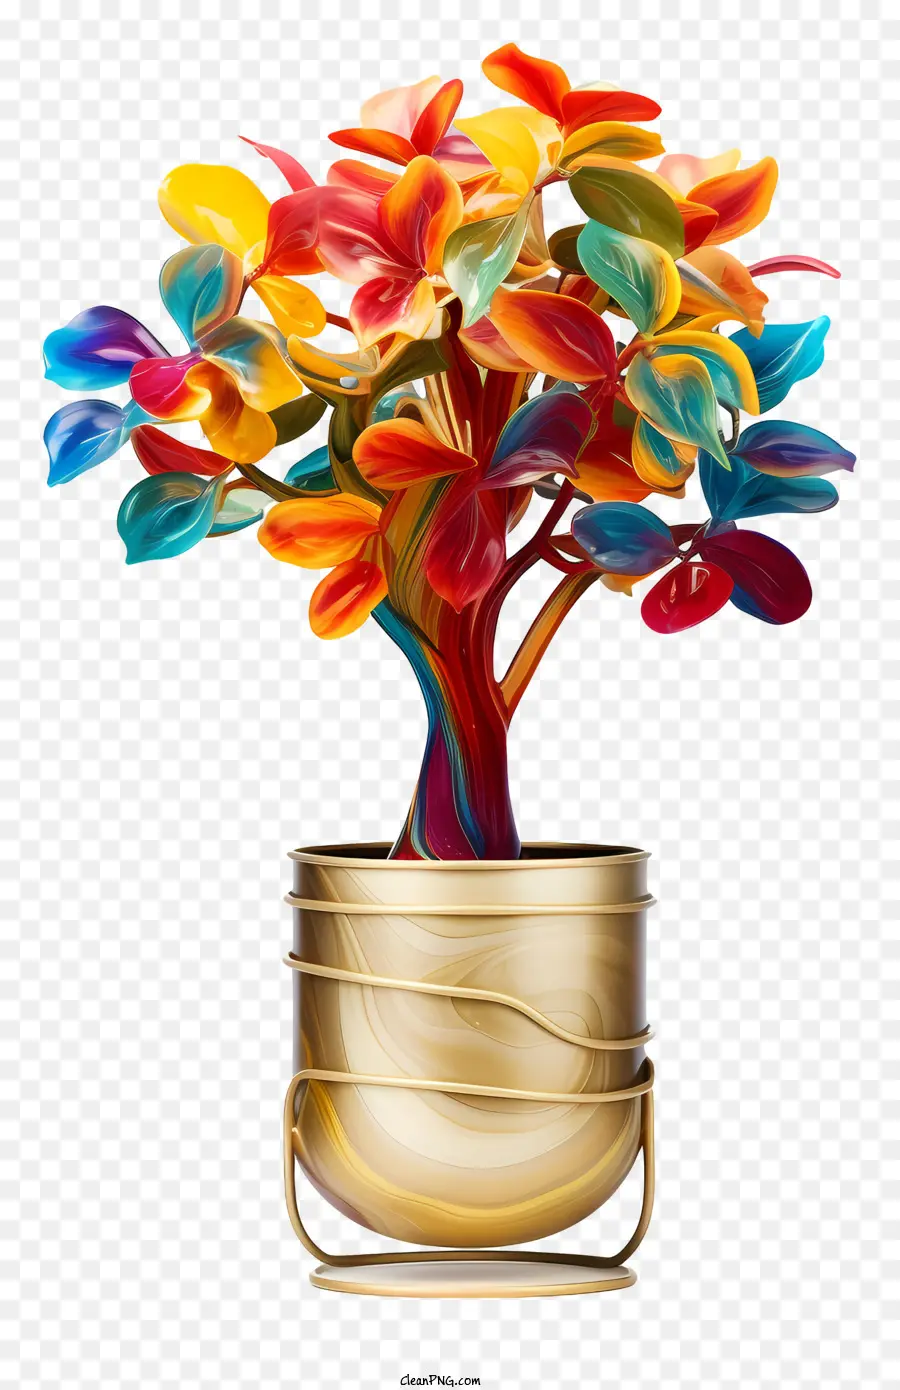 golden vase colorful plant symmetrical arrangement reflective surface gold finish